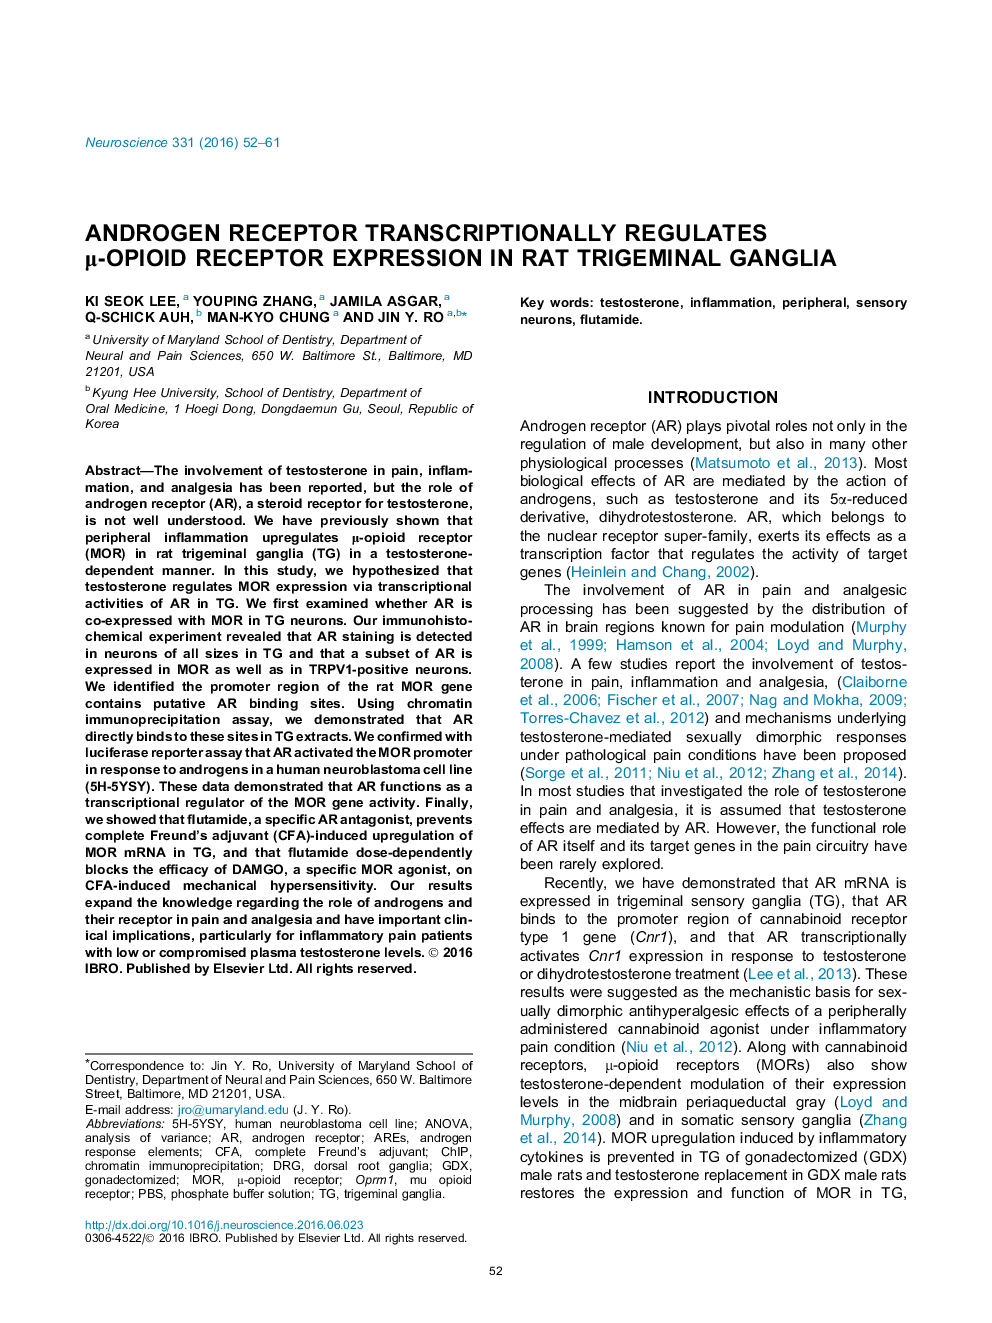 Androgen receptor transcriptionally regulates μ-opioid receptor expression in rat trigeminal ganglia